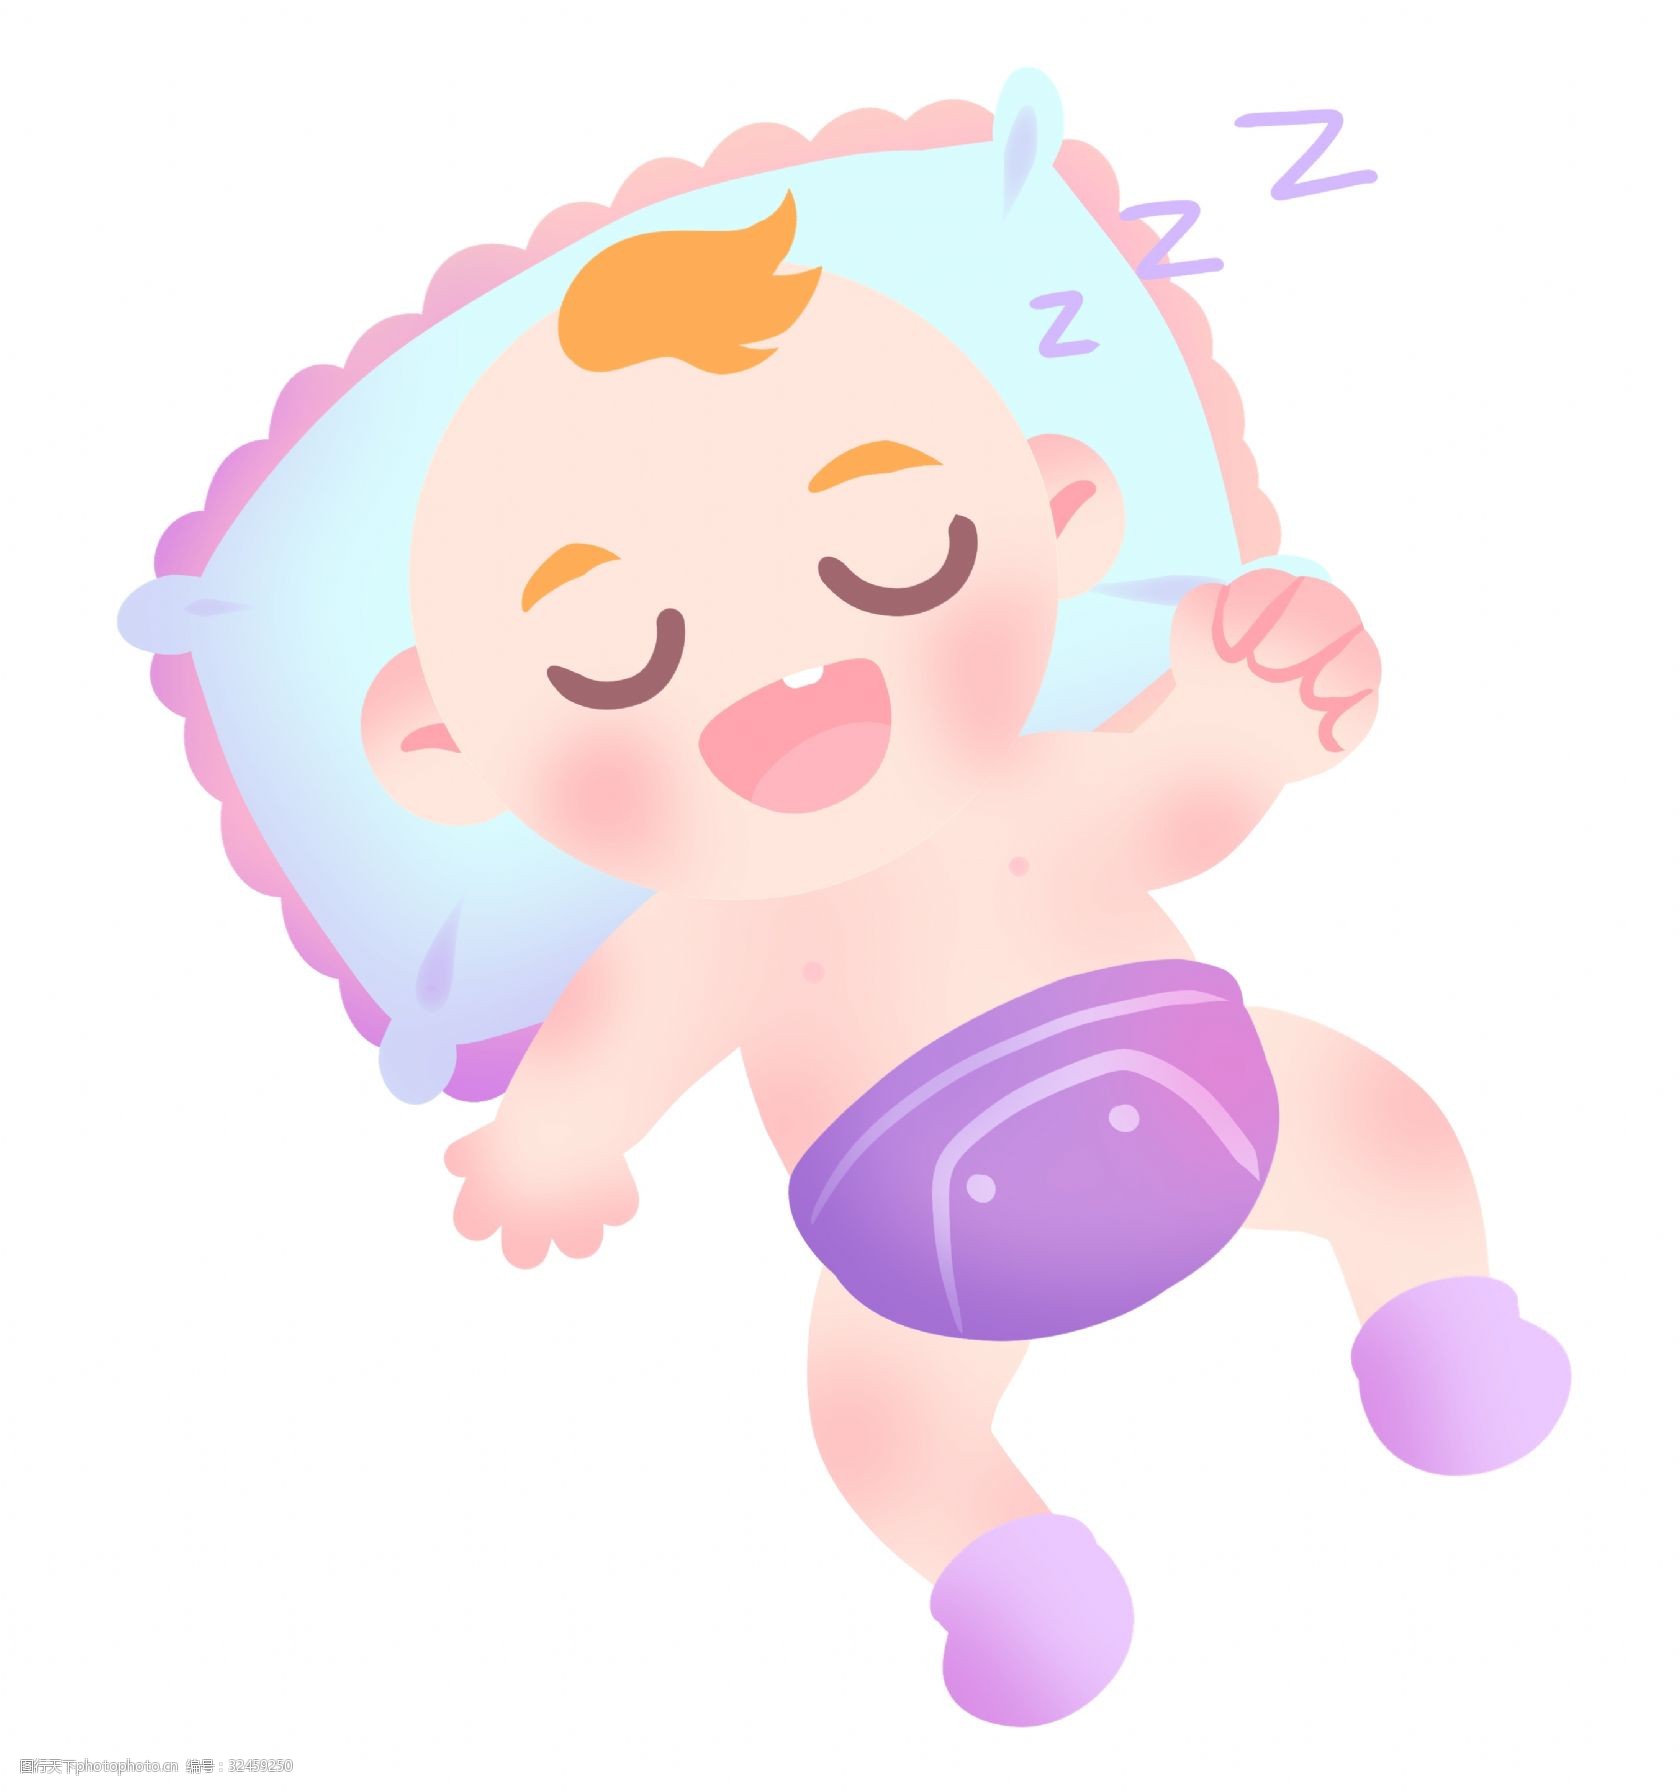 关键词:睡觉的婴儿宝贝插画 睡觉的宝贝 卡通插画 宝贝插画 婴儿插画